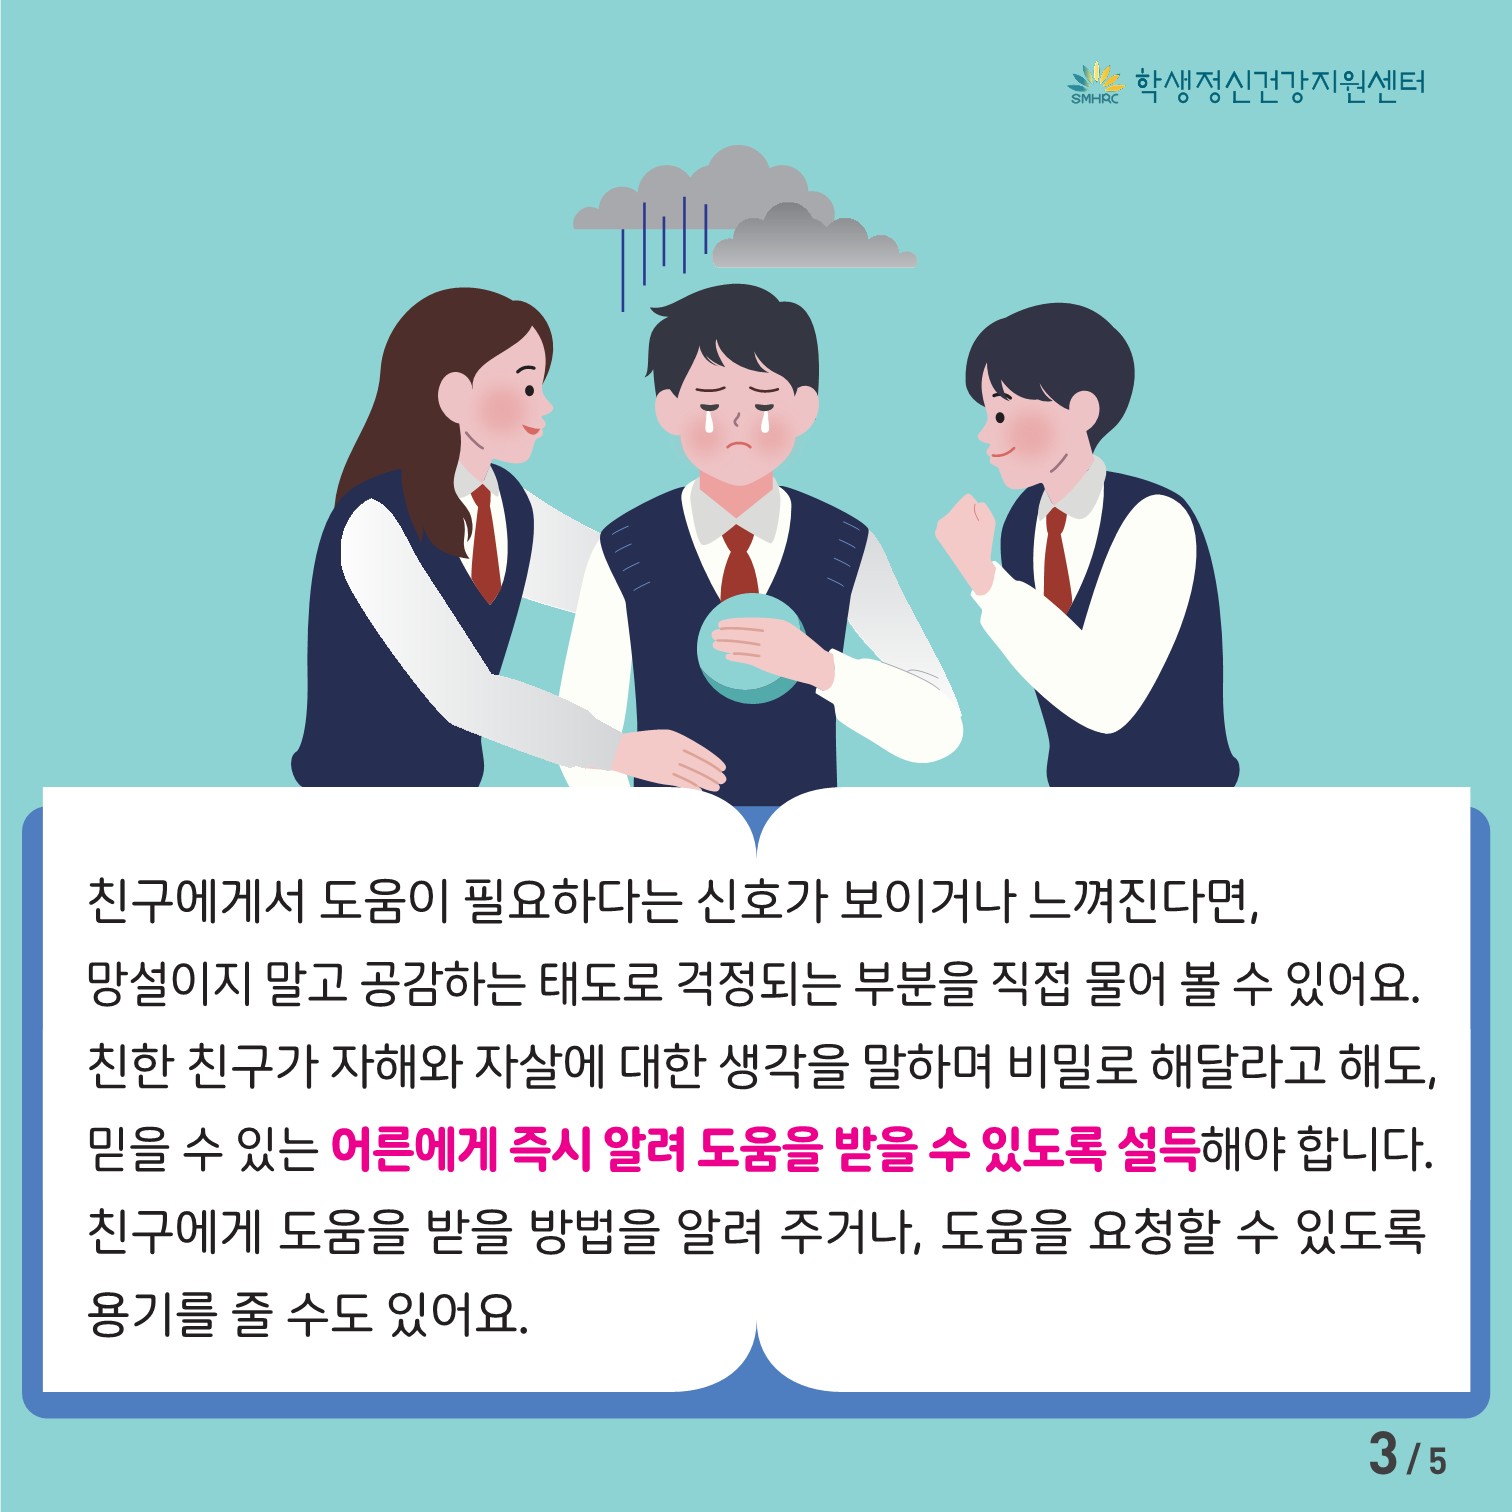 [중고등학생용] 카드뉴스 제 2023 - 9호(회복하기)_3